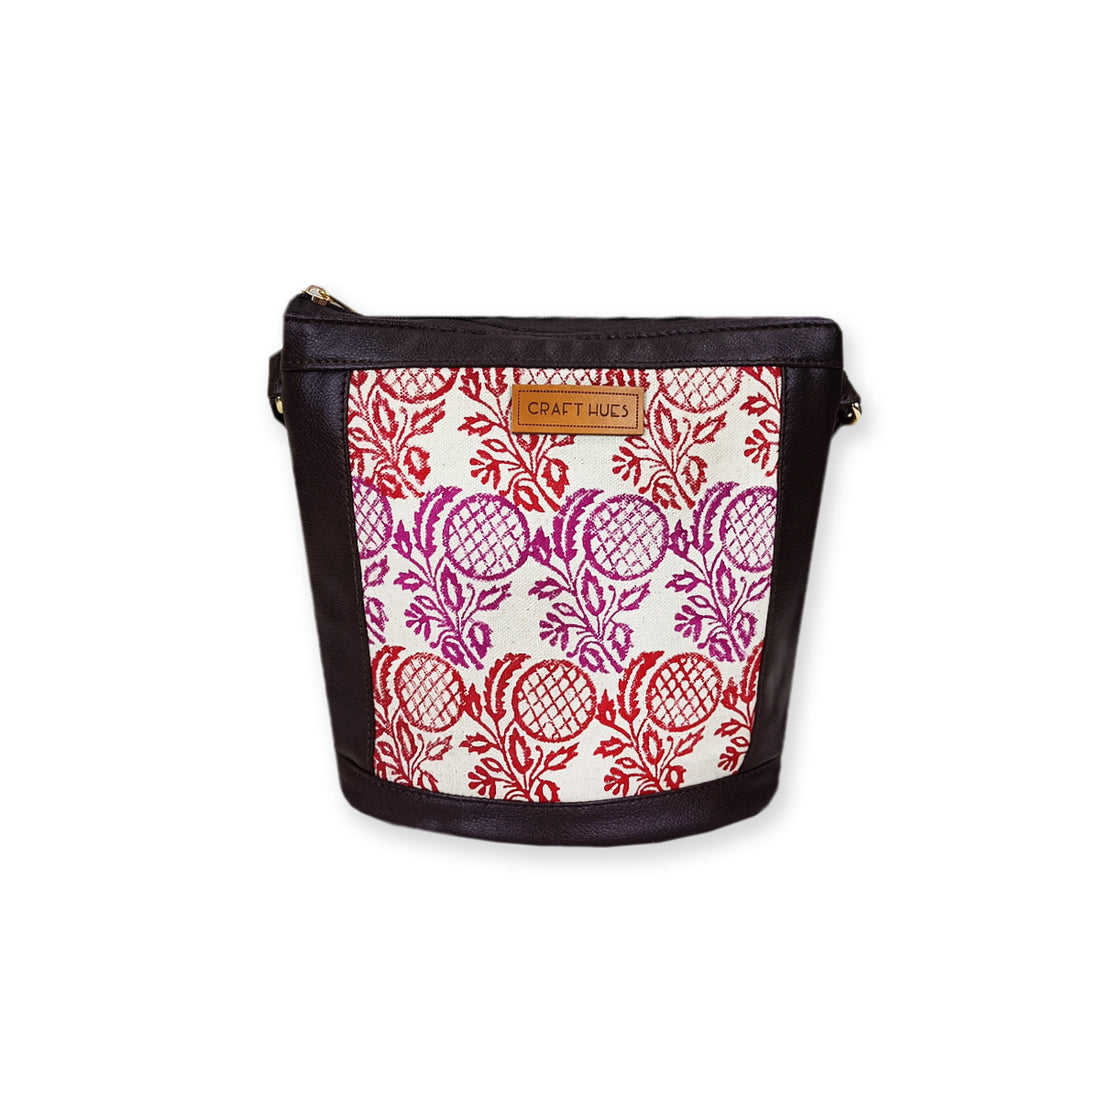 Anaar Block-Printed Bucket Sling Bag